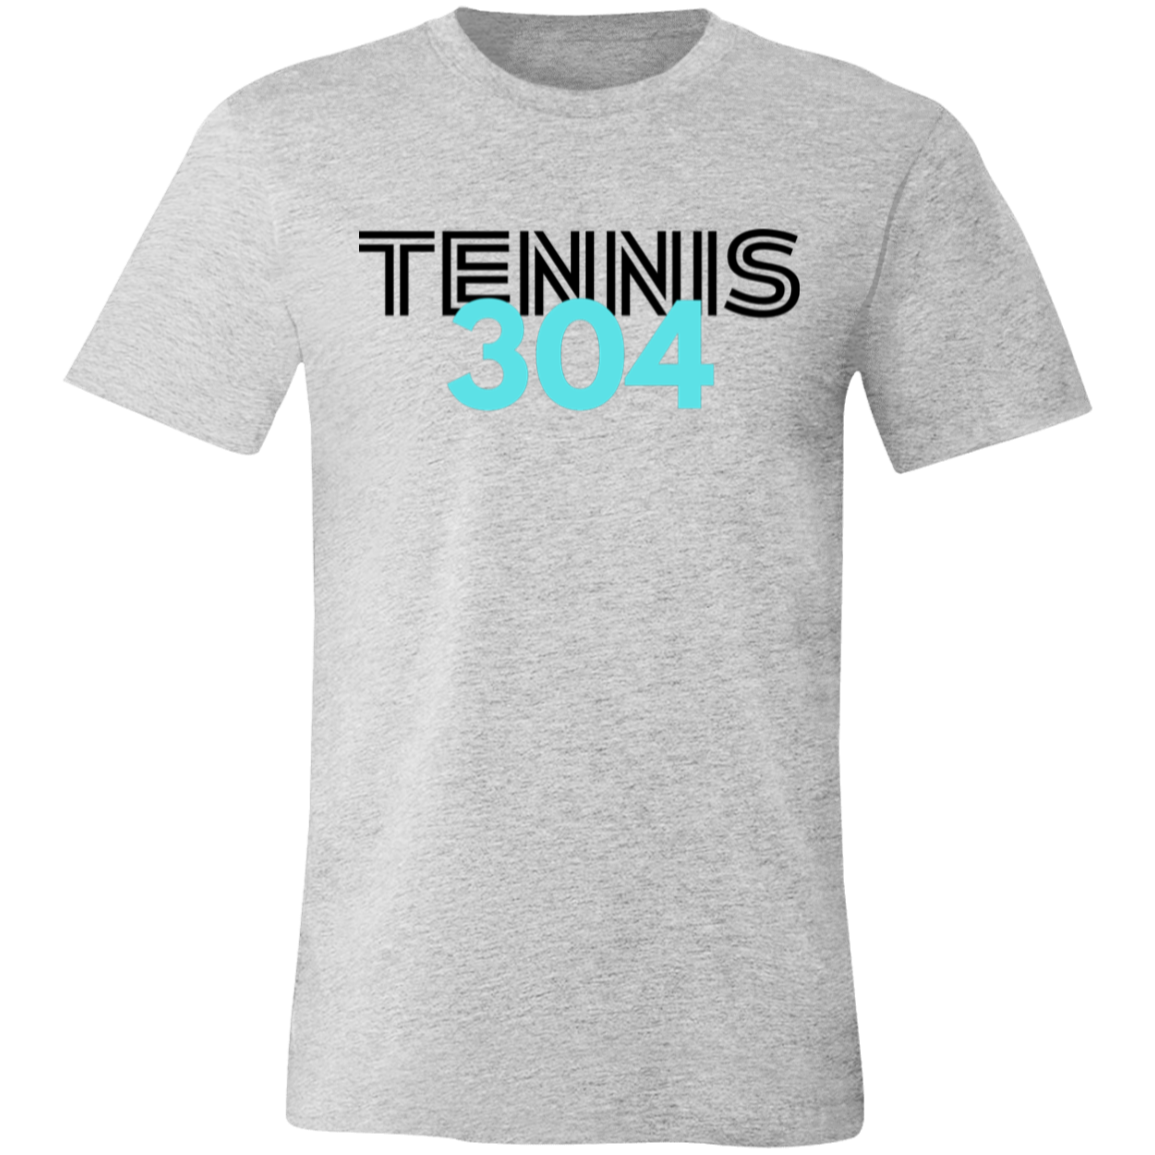 Tennis304 Unisex Jersey Tee